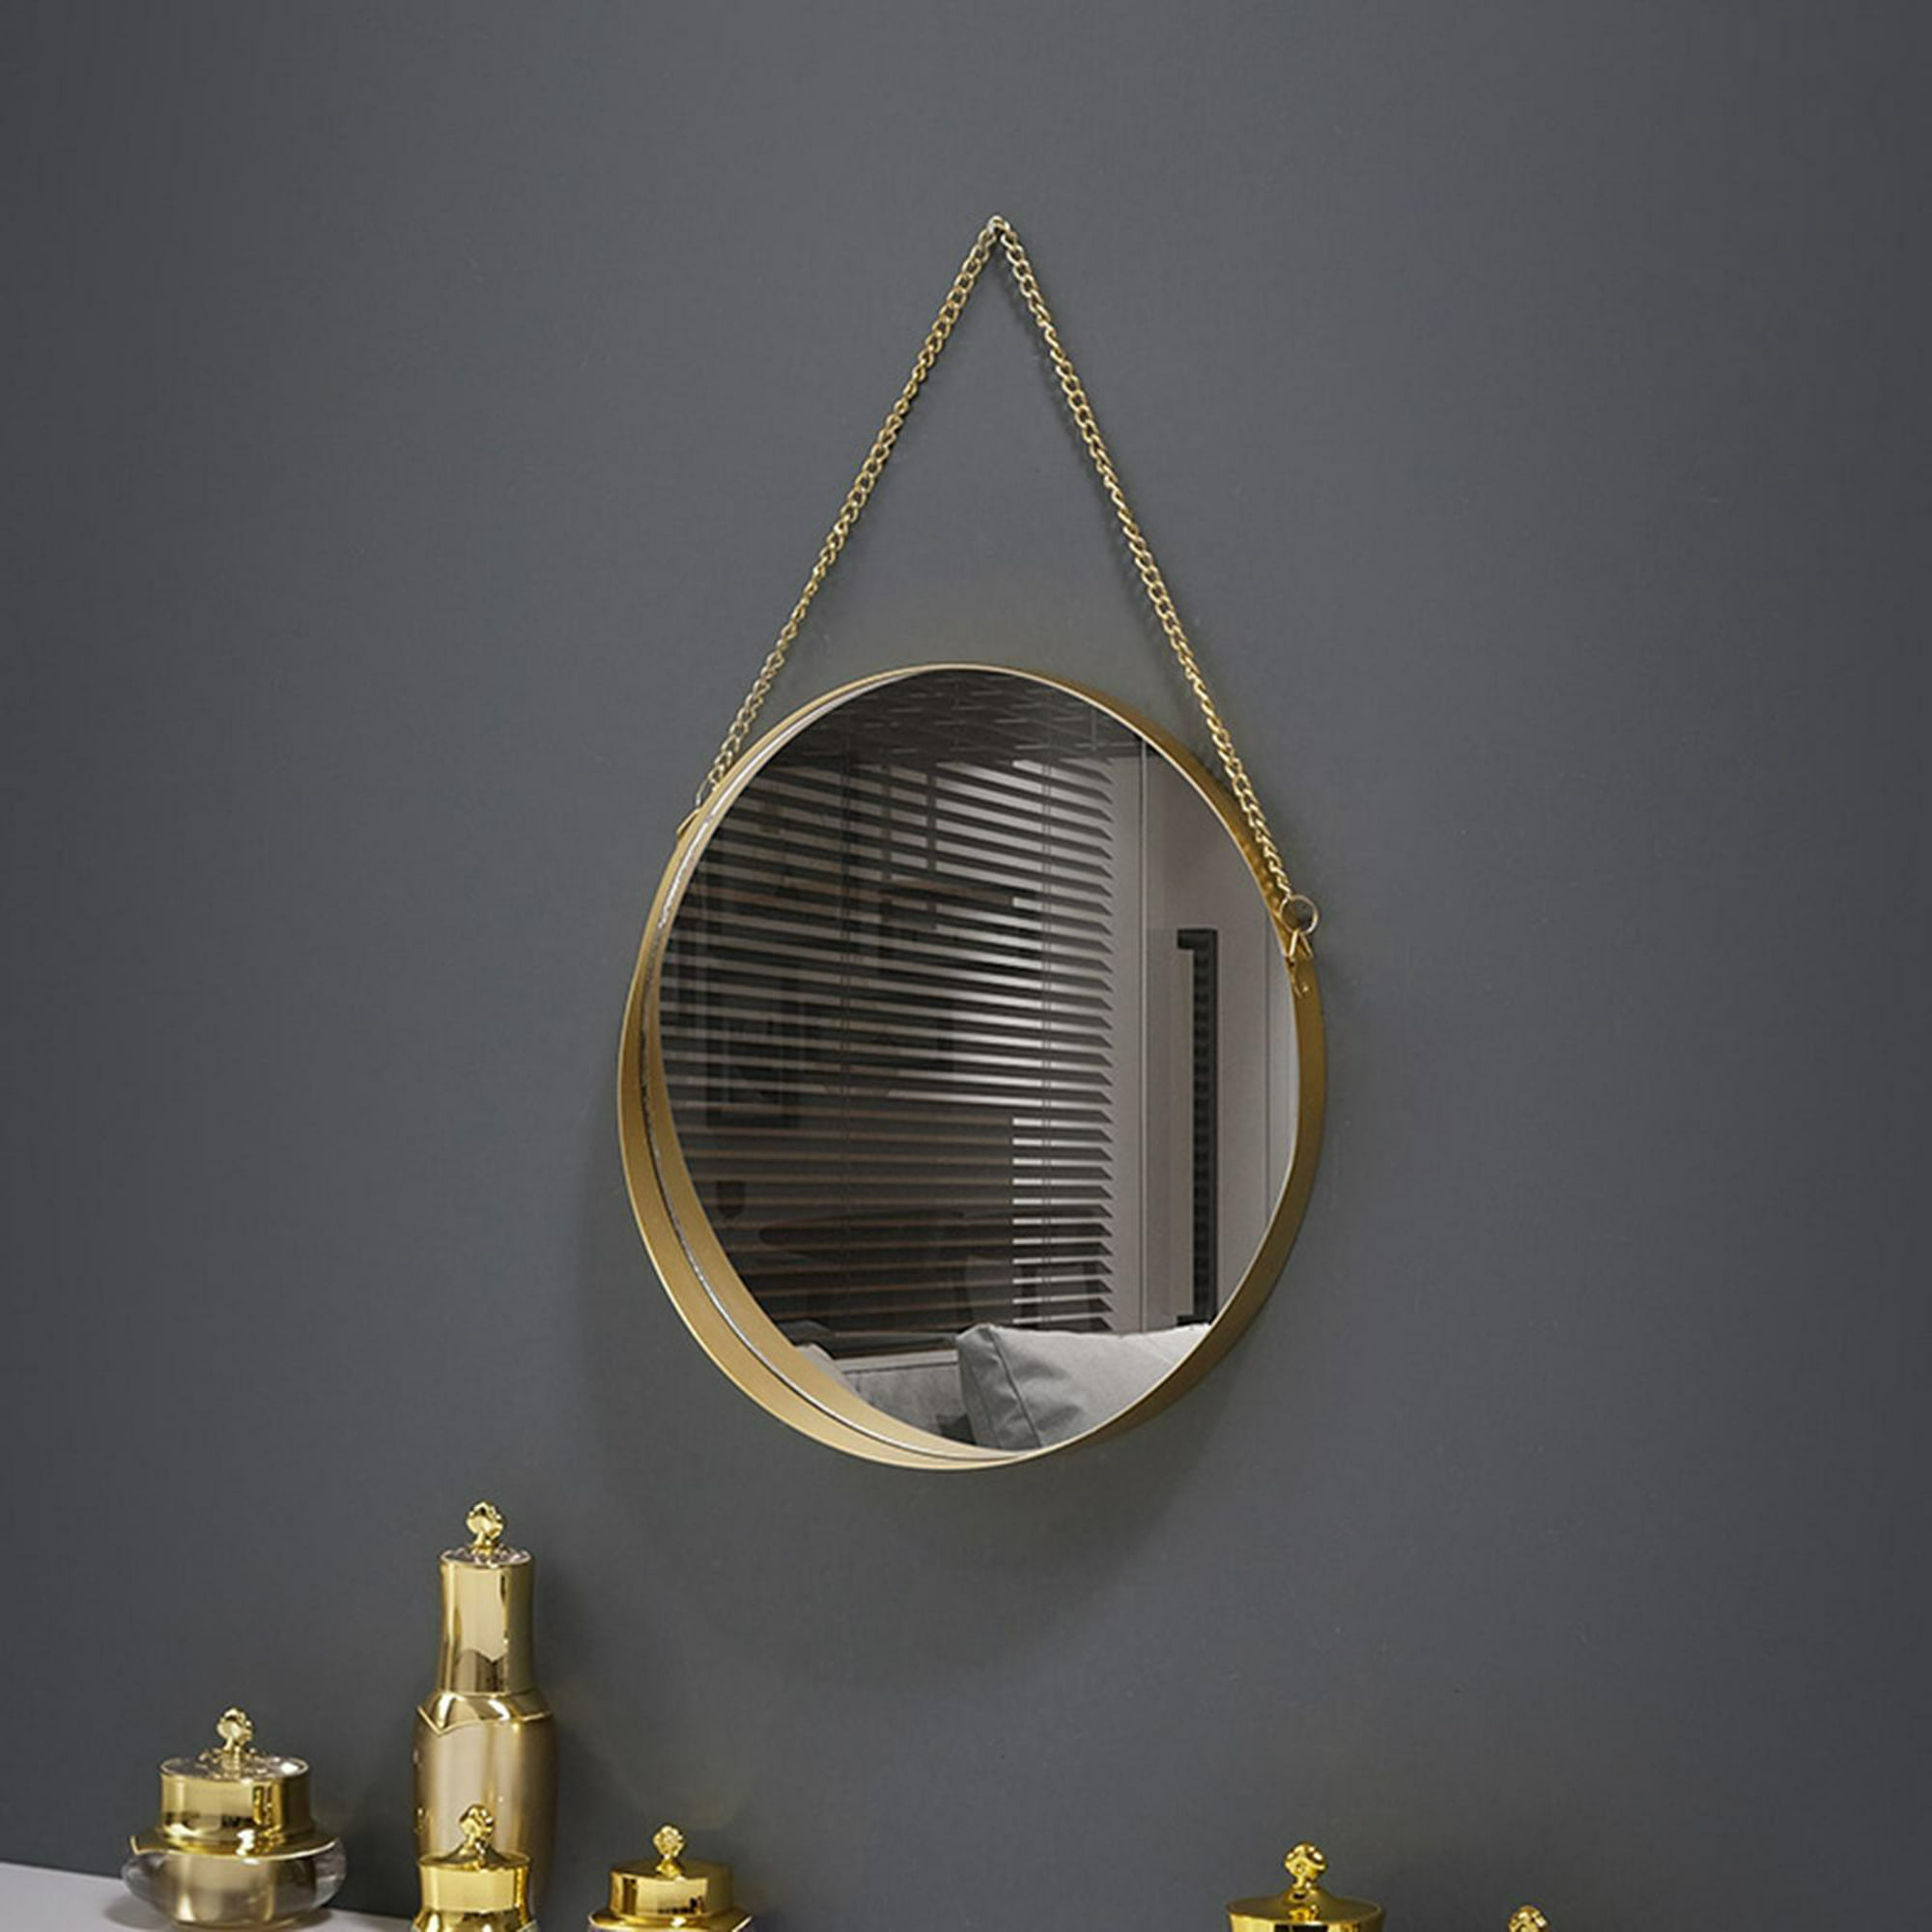 20 piezas en forma geométrica Espejo simple Espejo Pegatina para casa